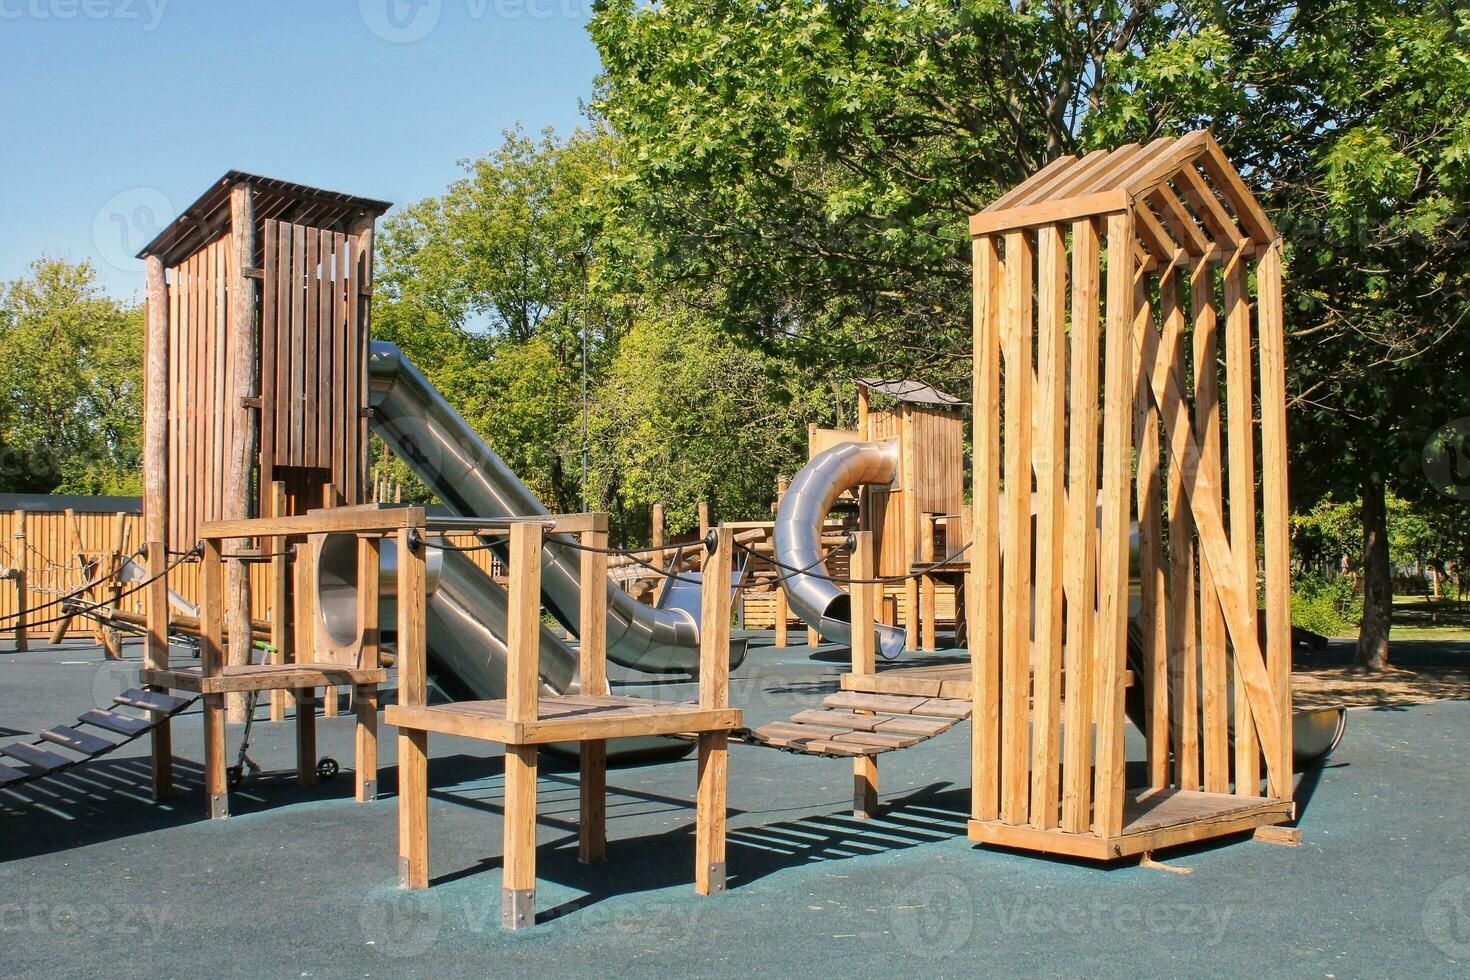 Équipement De Terrain De Jeu Extérieur Pour Enfants De Sécurité écologique  Moderne En Bois Dans Un Parc Public. Architecture De La Nature